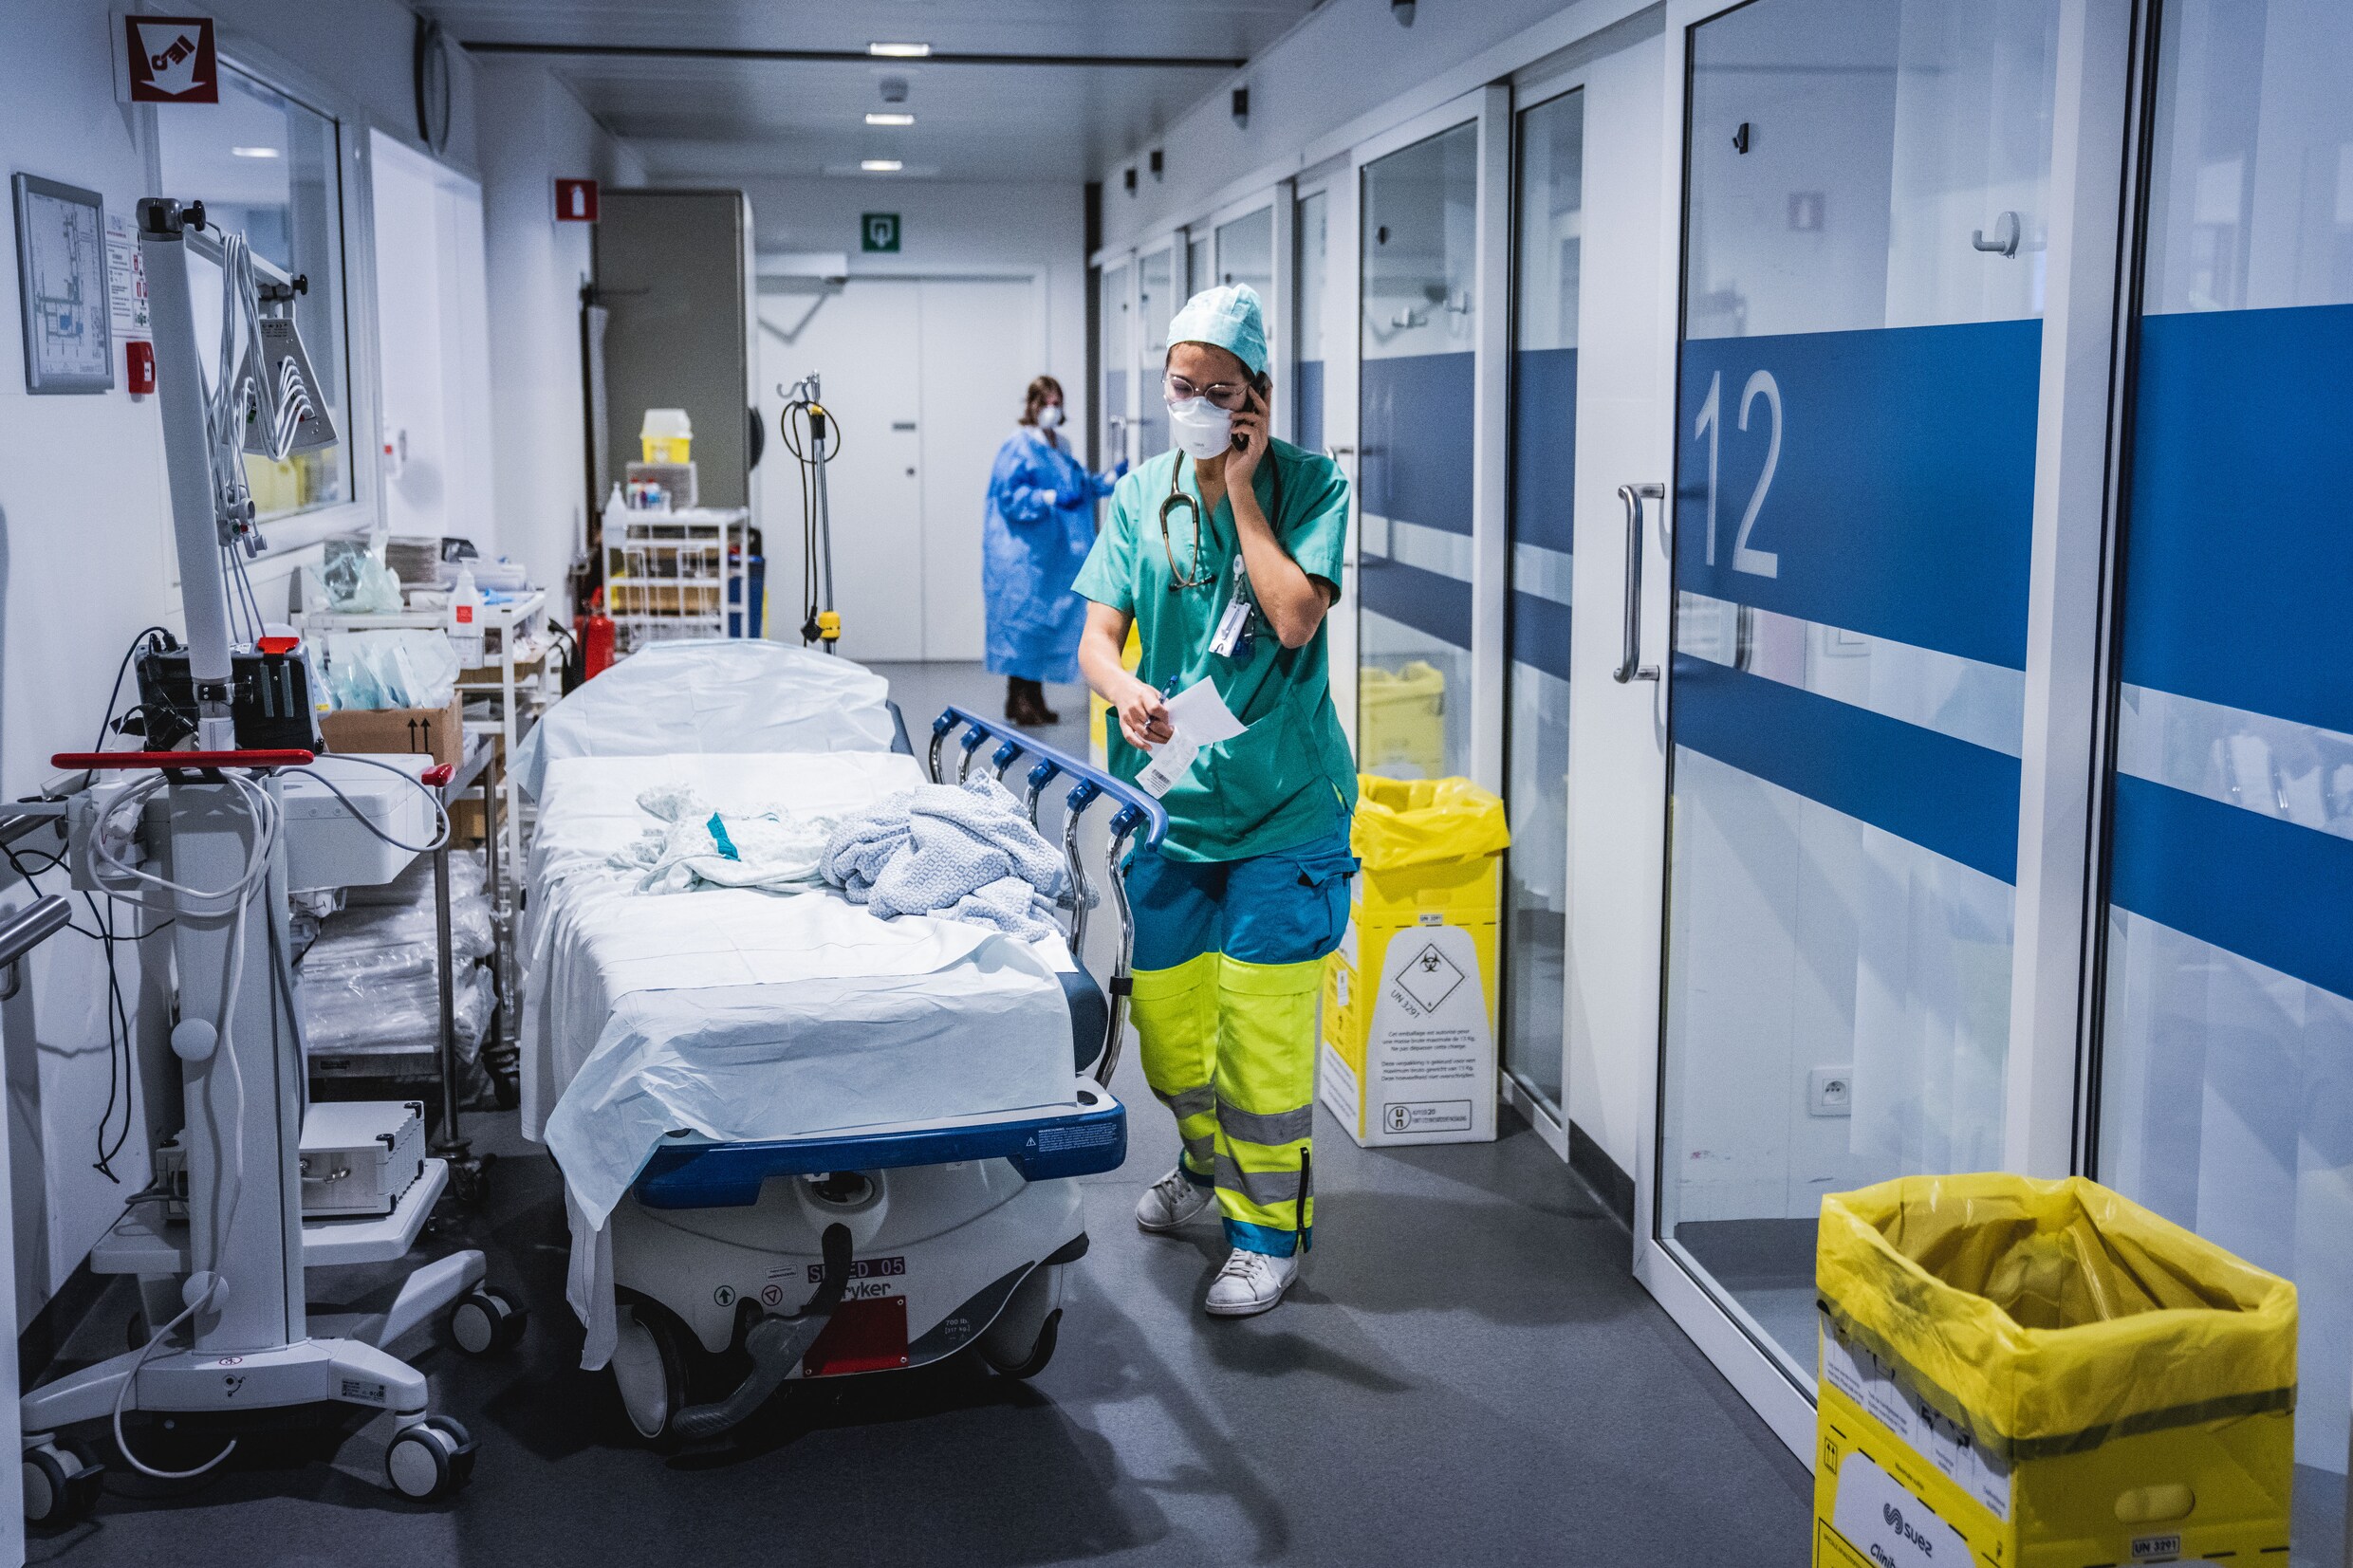 Coronacijfers stabiliseren, maar druk op ziekenhuizen blijft bijzonder groot